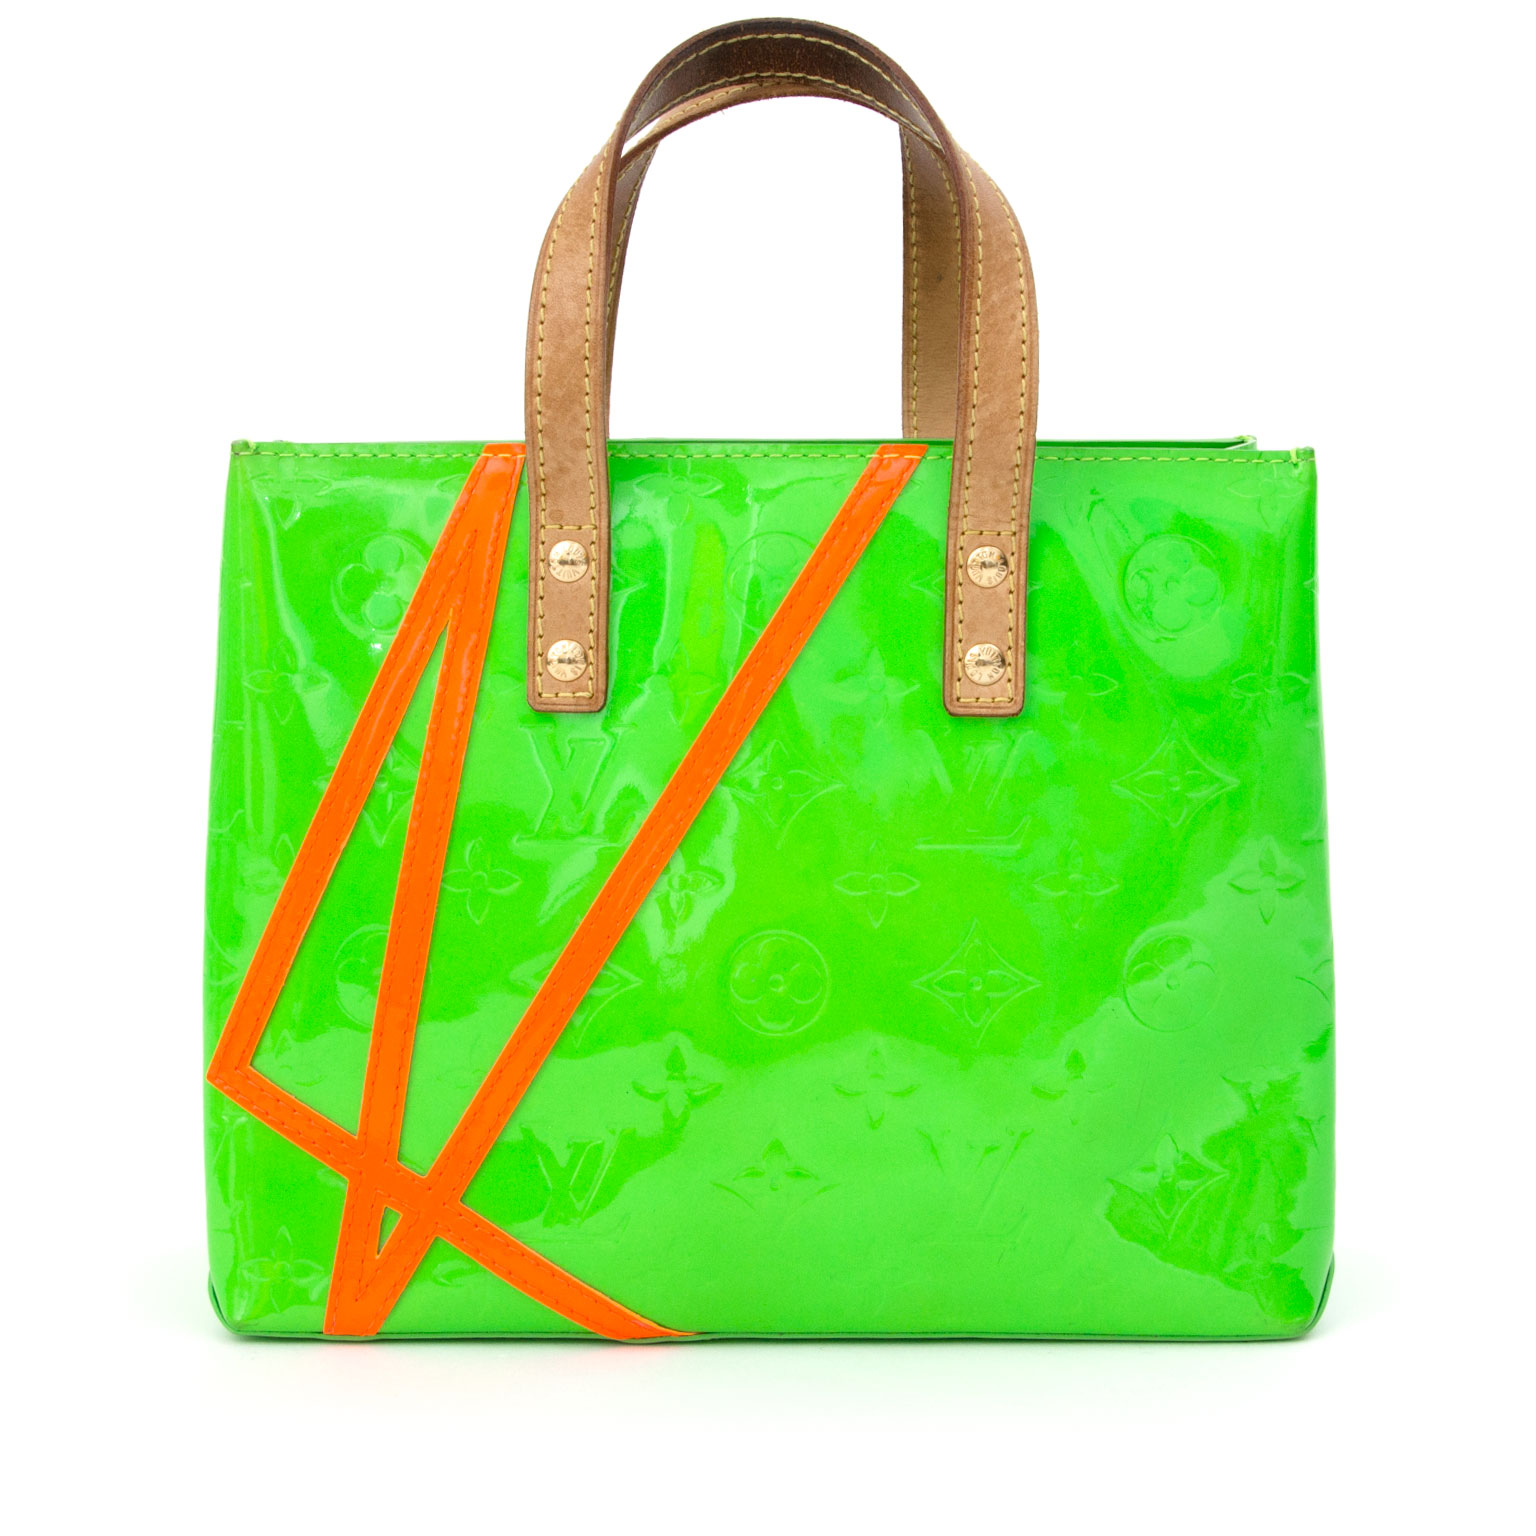 Louis Vuitton Handbag Wilshire Pm Yellow Green Monogram Vernis M91643  Patent Leather M049 Louis Auction